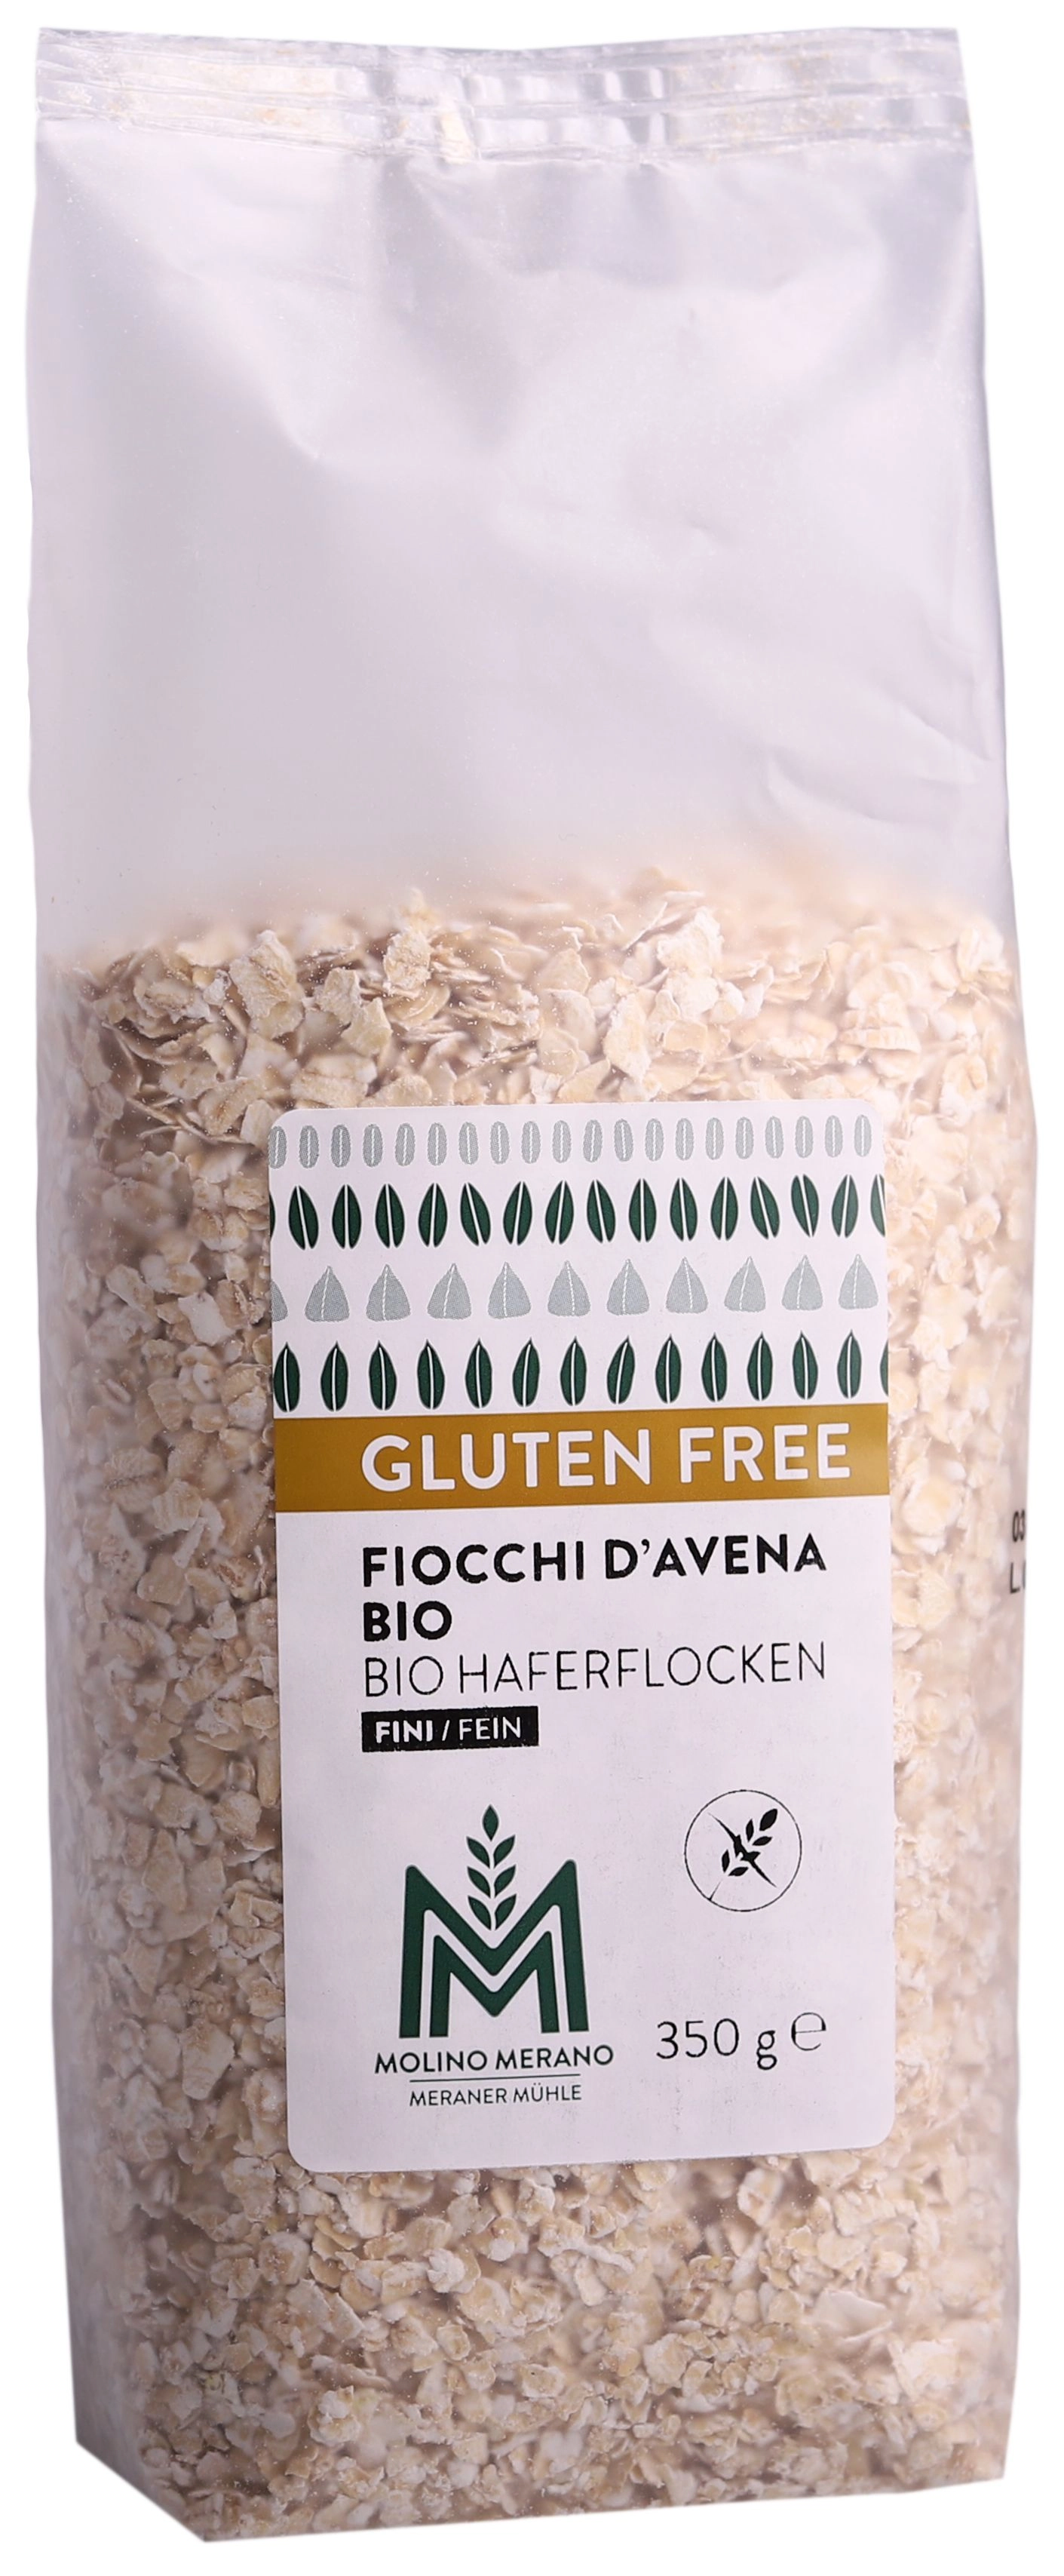 Organic oat flakes fine gluten free